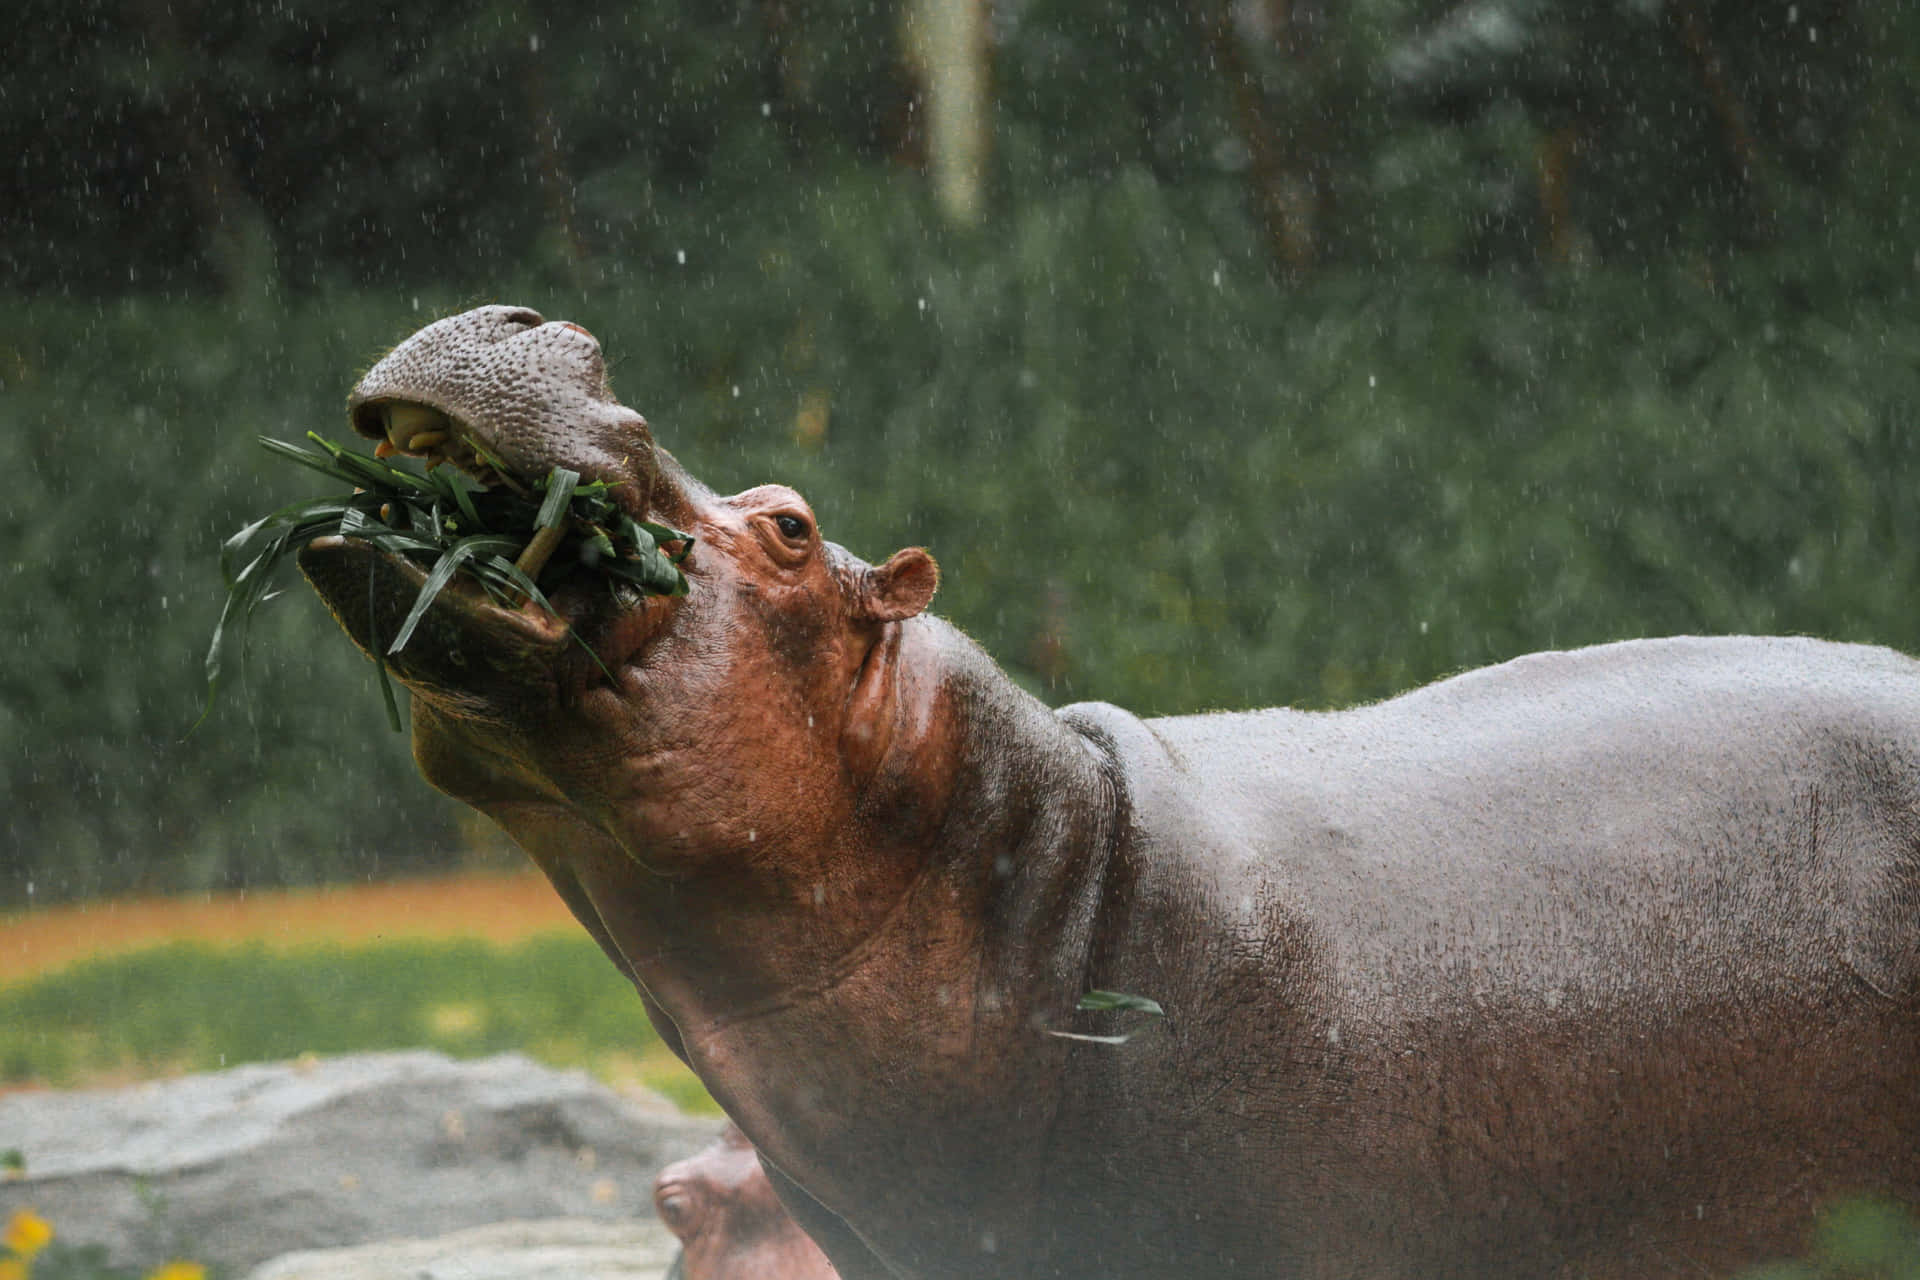 Imagende Un Hipopótamo Herbívoro En El Agua.